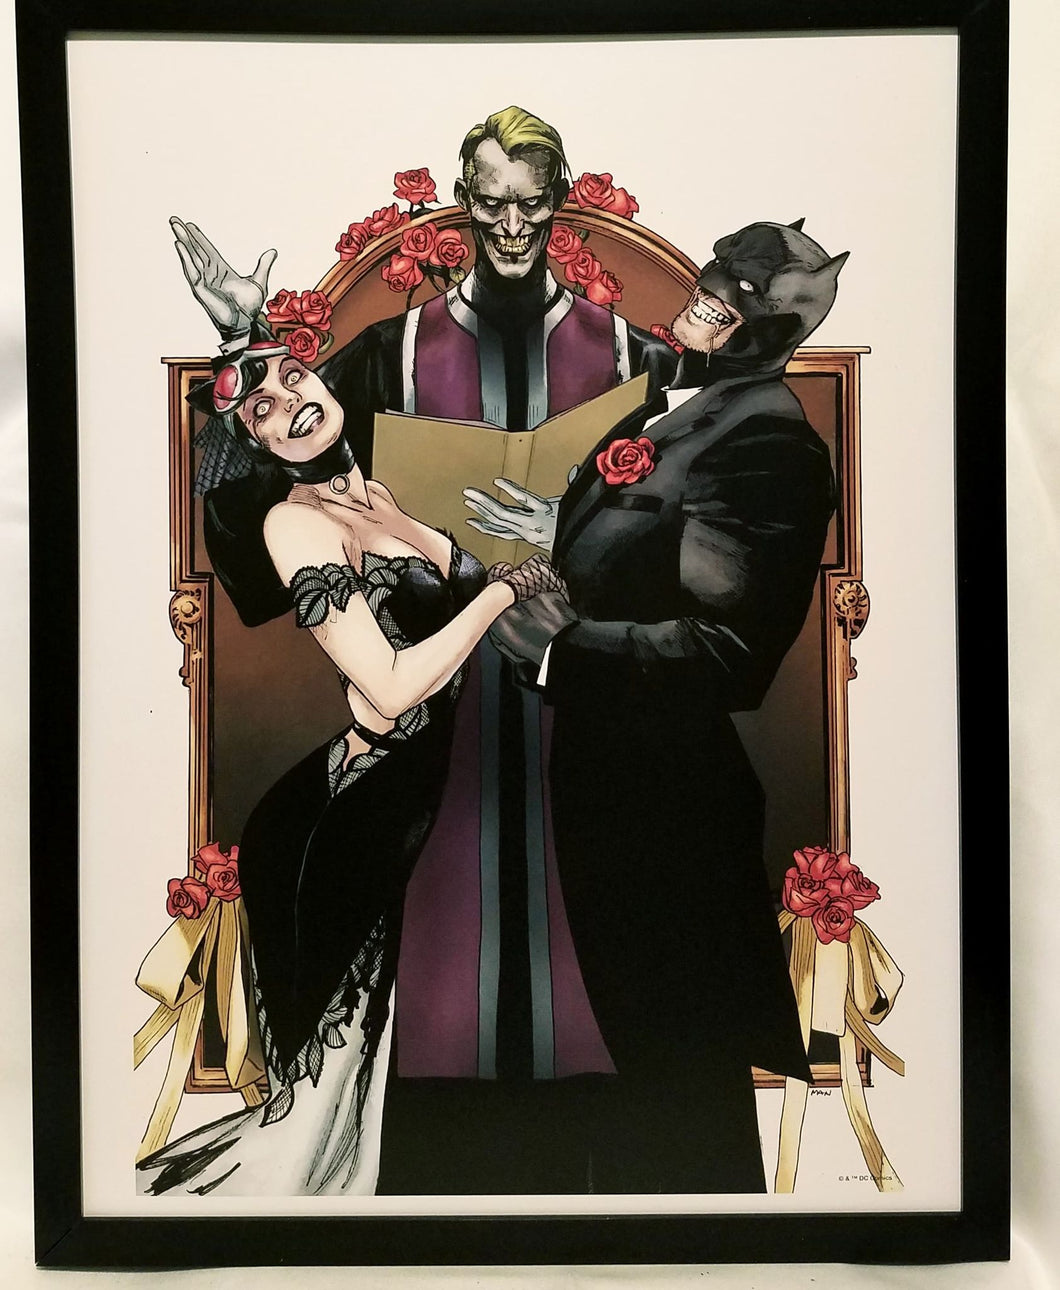 Batman Joker Catwoman by Clay Mann FRAMED 12x16 Art Print Poster DC Comics